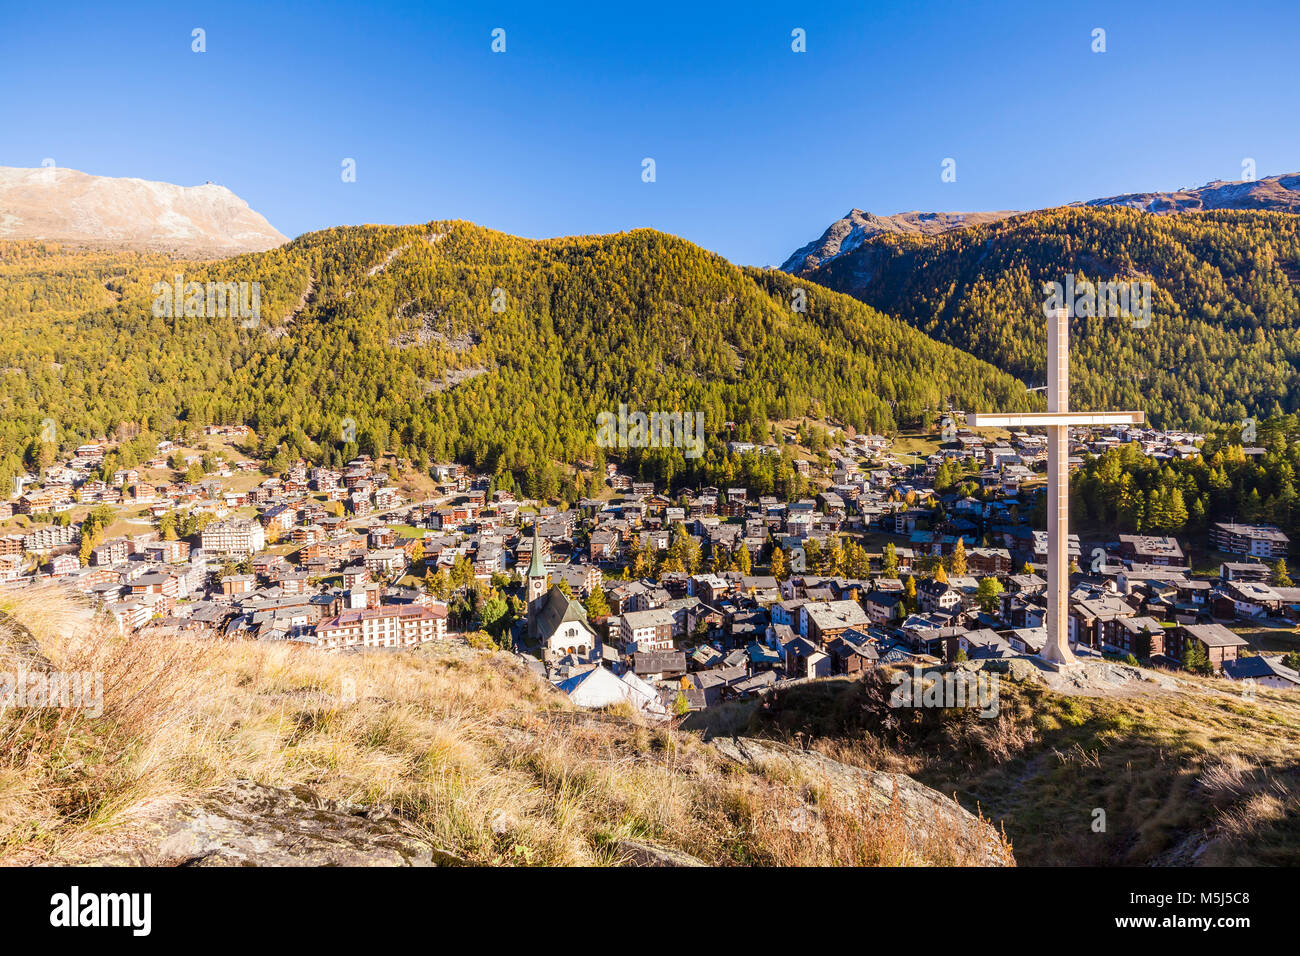 Schweiz, Kanton Wallis, Zermatt, Ortsansicht, Kirche, hotel, chalet, Ferienhäuser, Ferienwohnungen, Gipfelkreuz Foto Stock